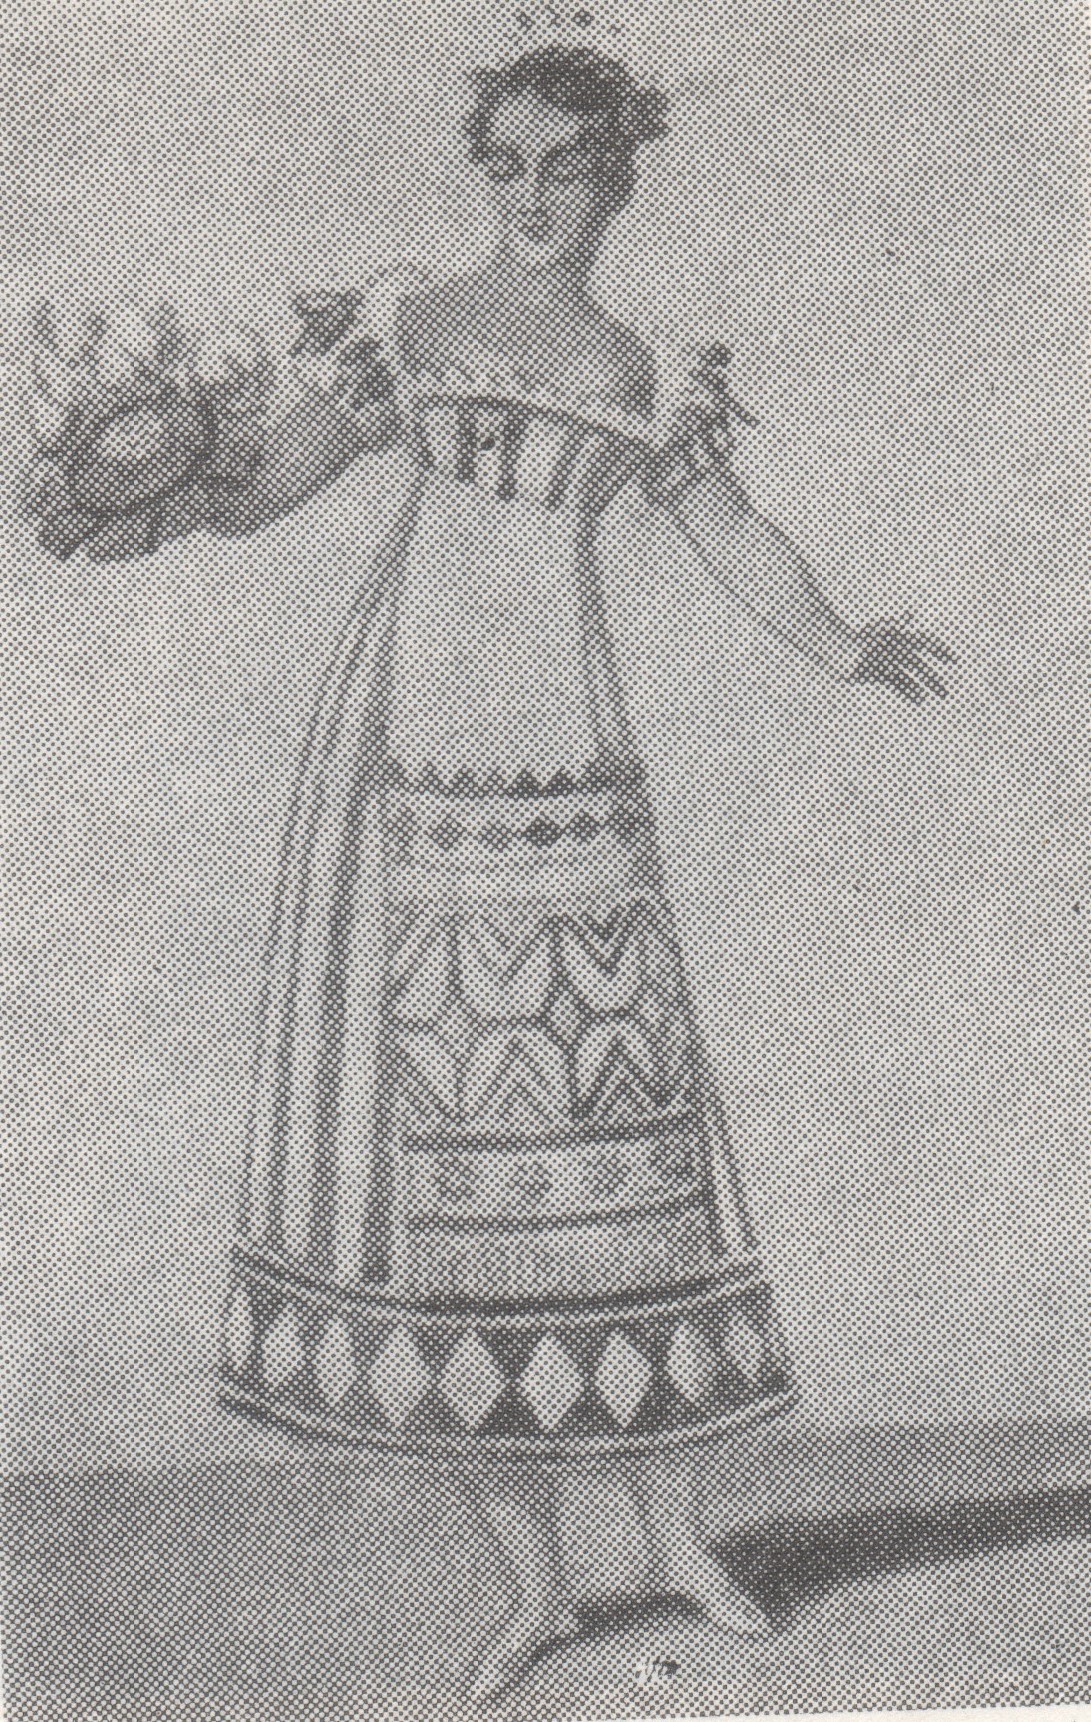 О. Гарнери. Эскиз костюма к балету «Клари». 1820